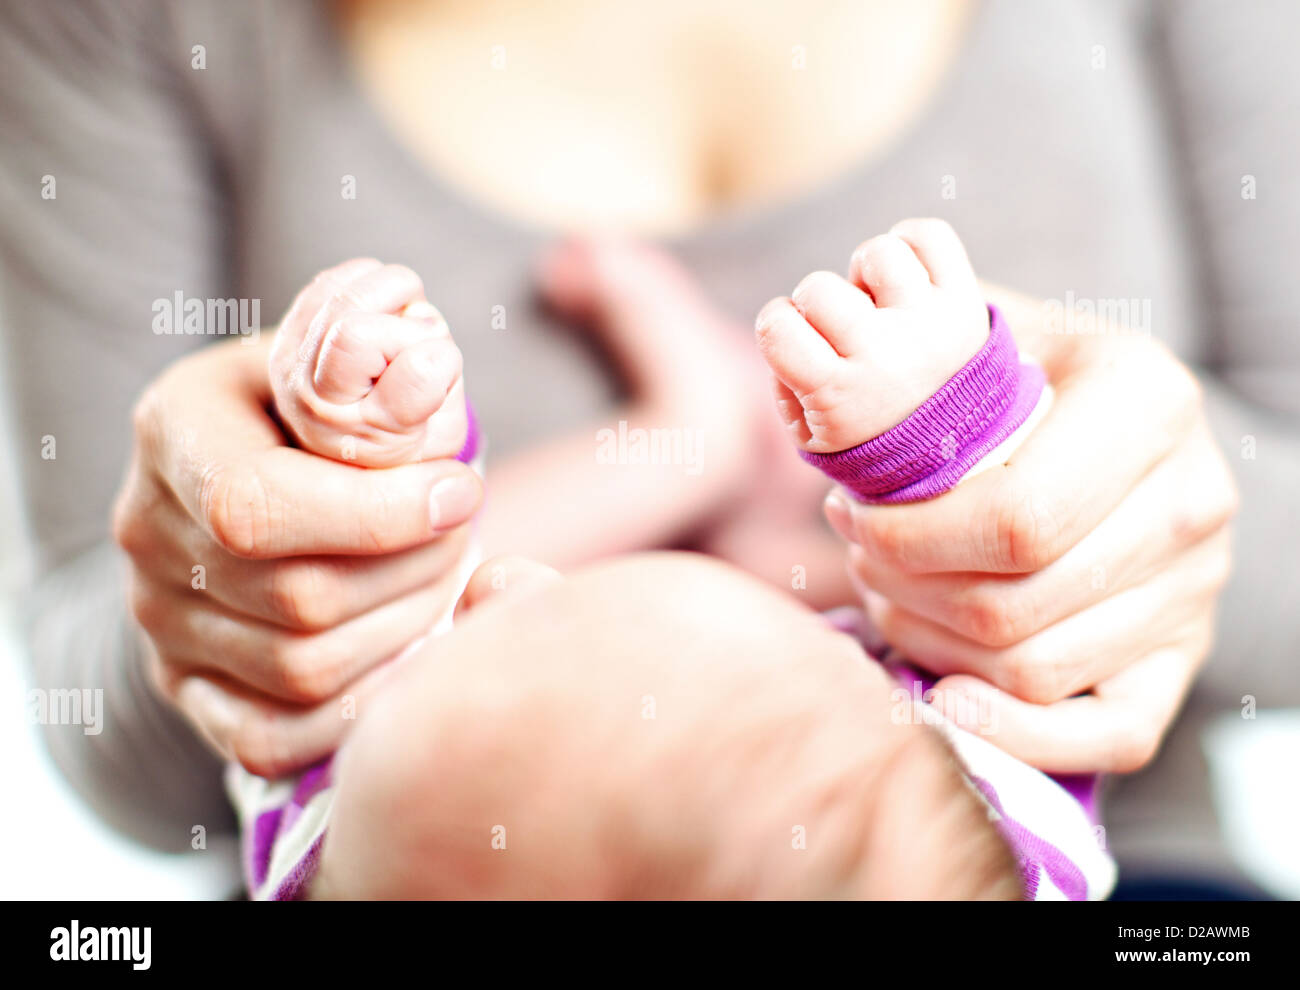 Overhead vista ritagliata di una madre tenendo un neonato con le mani in mano nel suo proprio con la messa a fuoco per le mani Foto Stock